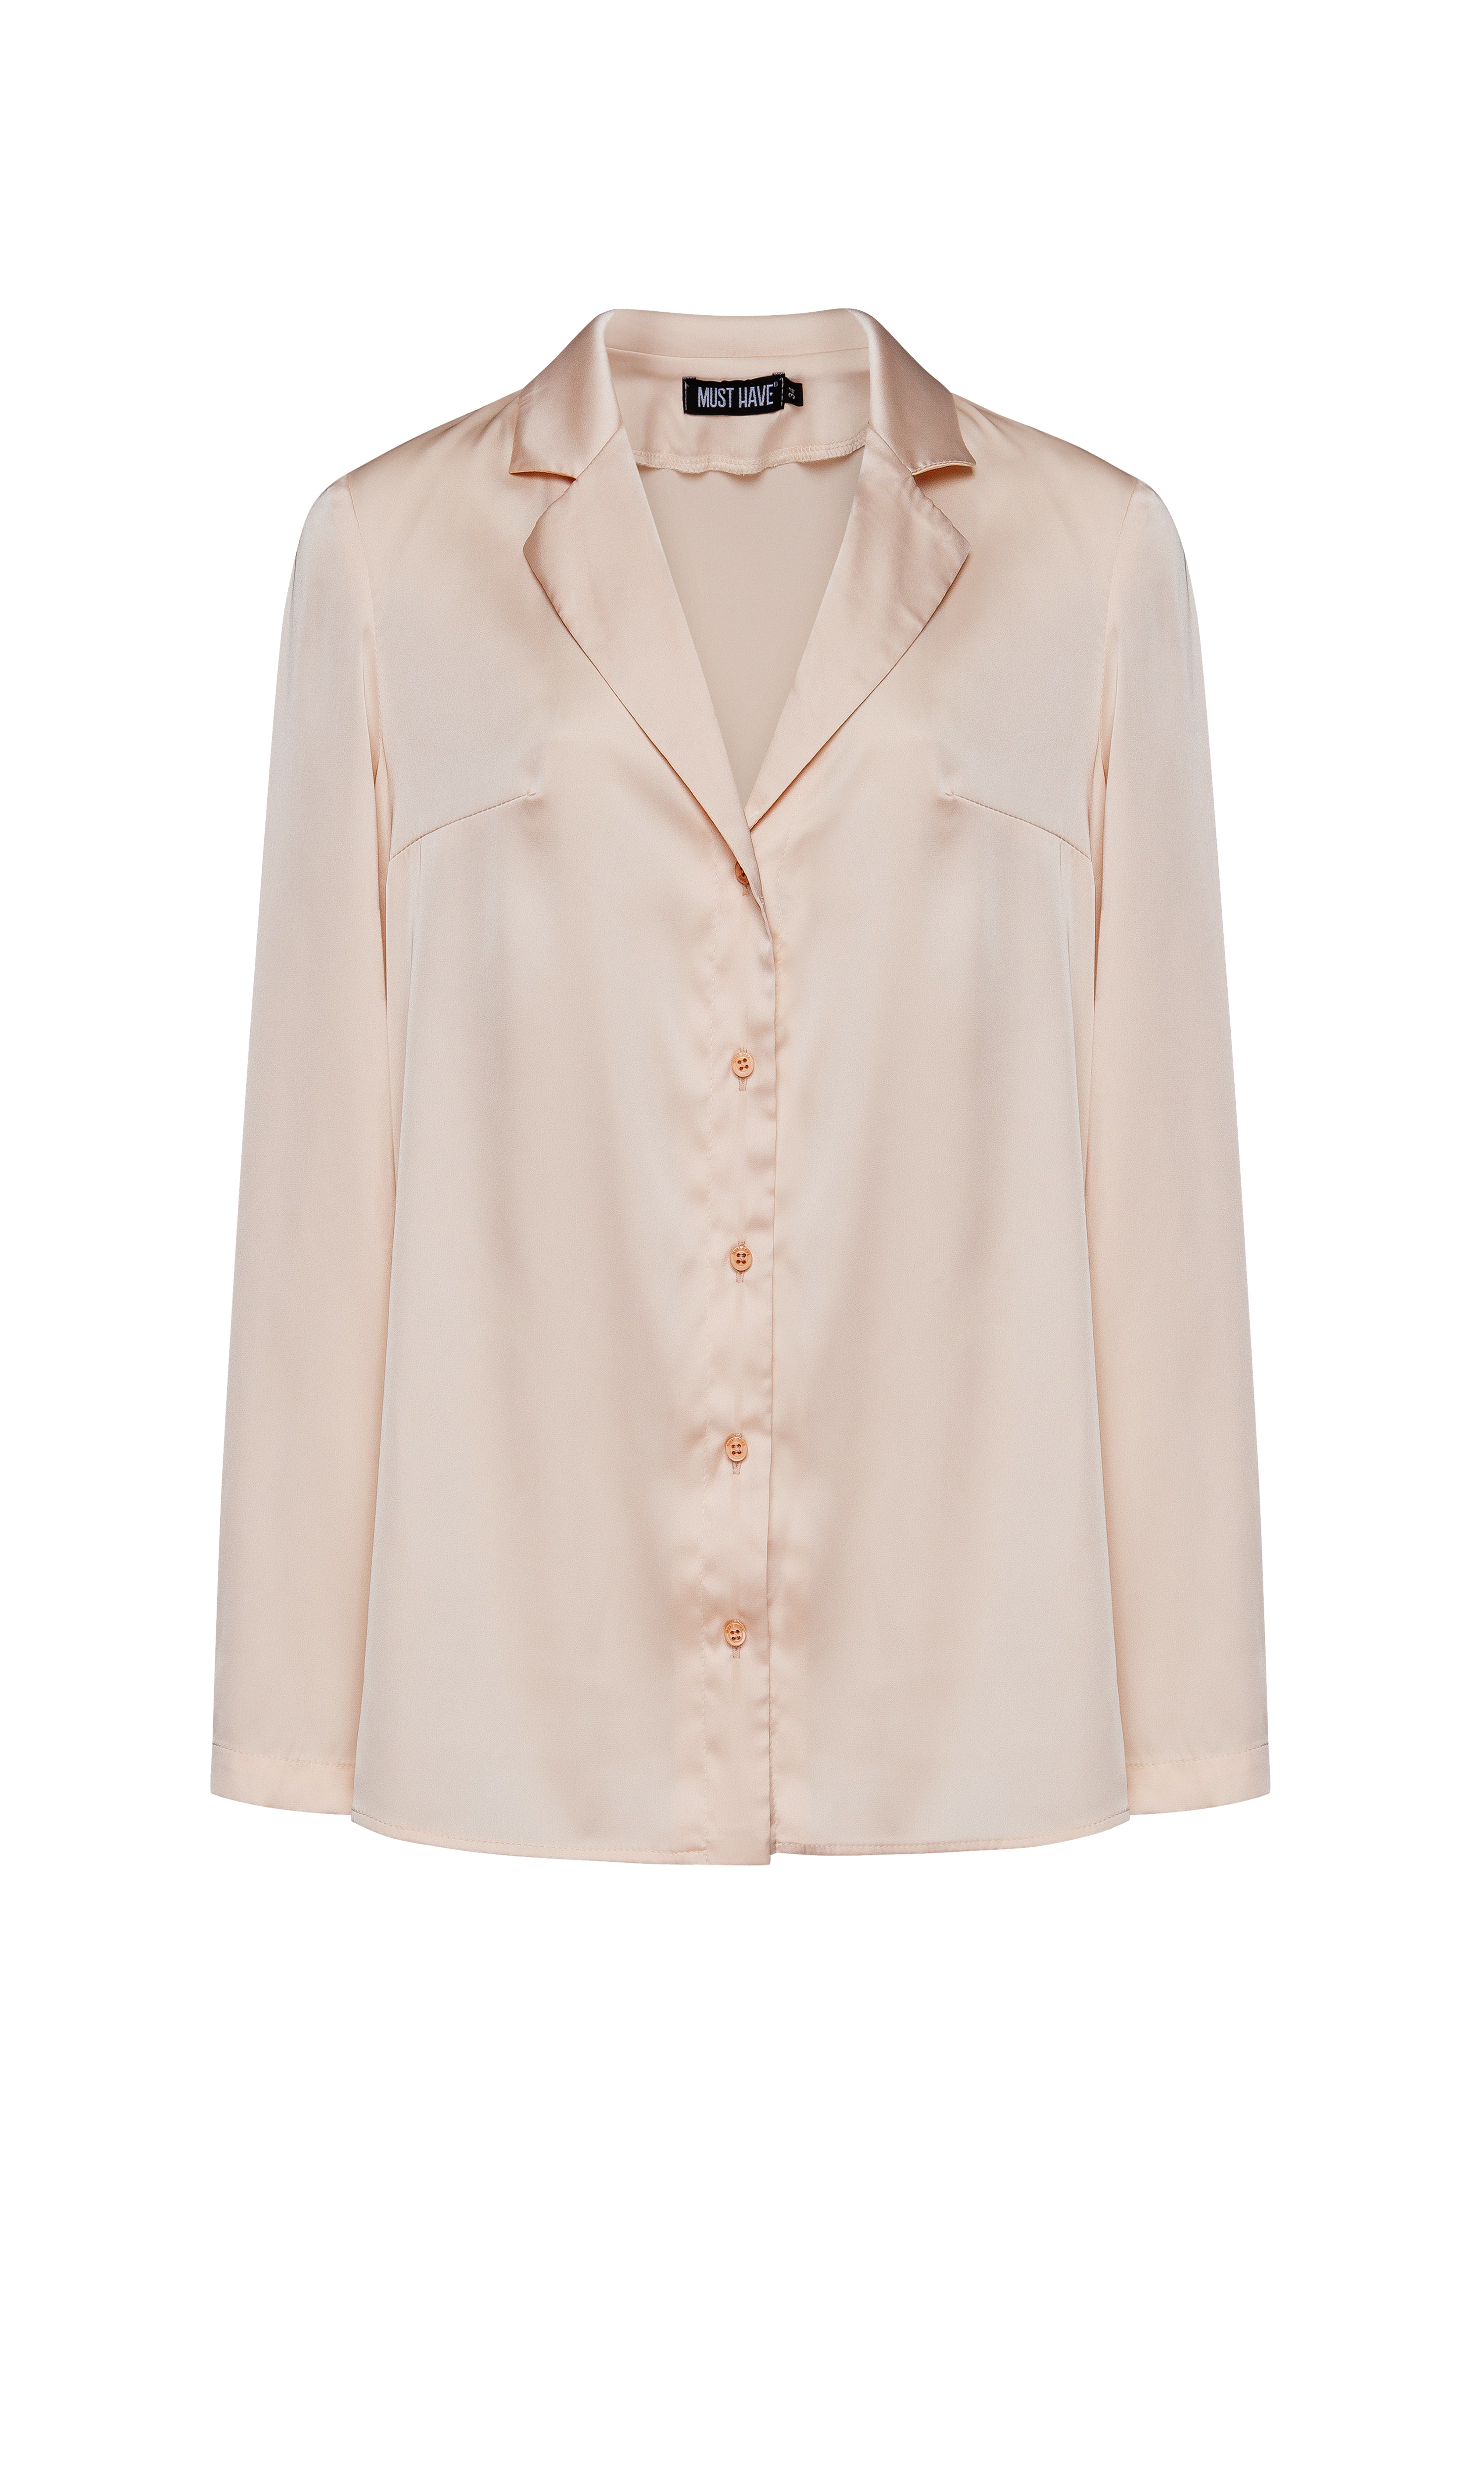 Сатинова блуза кольору екрю з відкладним коміром і довгими рукавами, фото 5